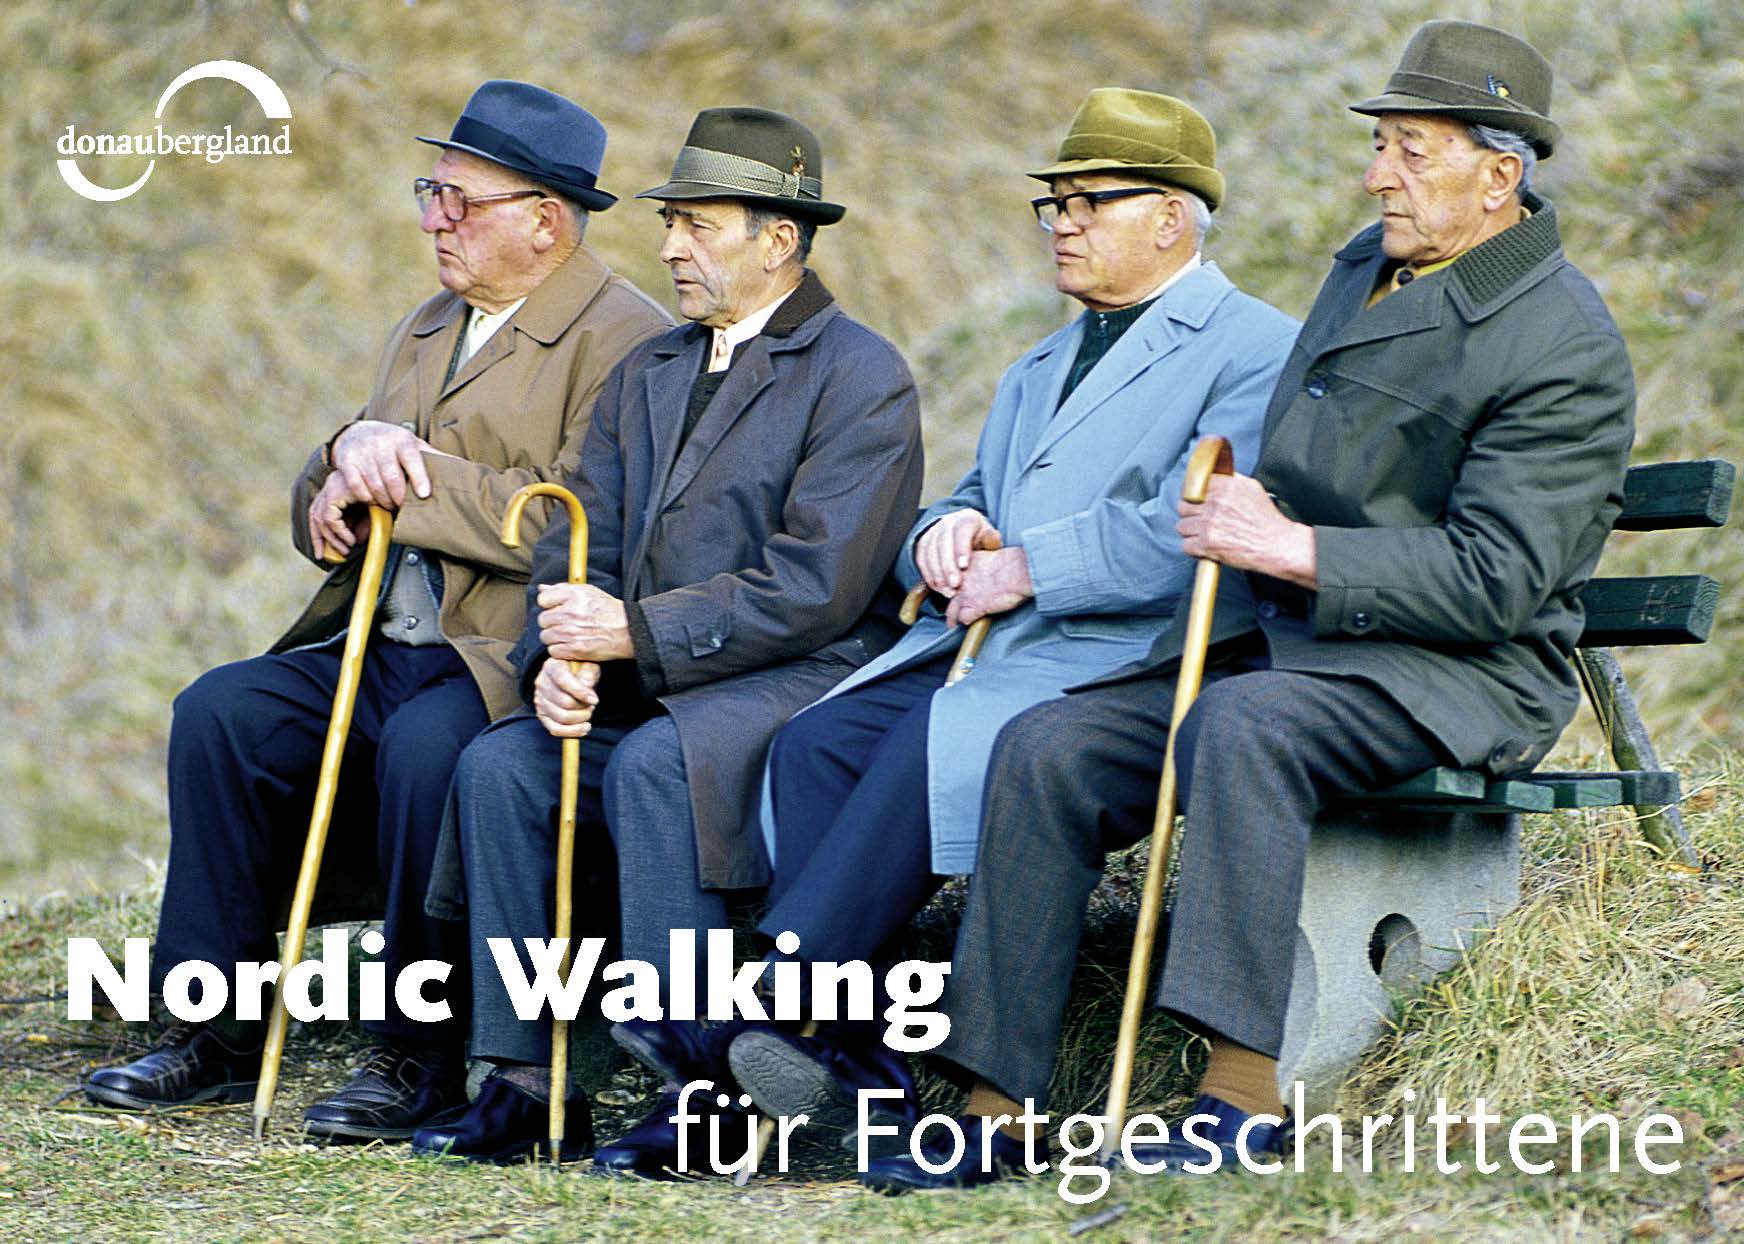 Donaubergland Postkartenmotiv mit vier Männern auf einer Bank, die alle einen Hut, einen Stock und einen Mantel tragen und in die selbe Richtung blicken.